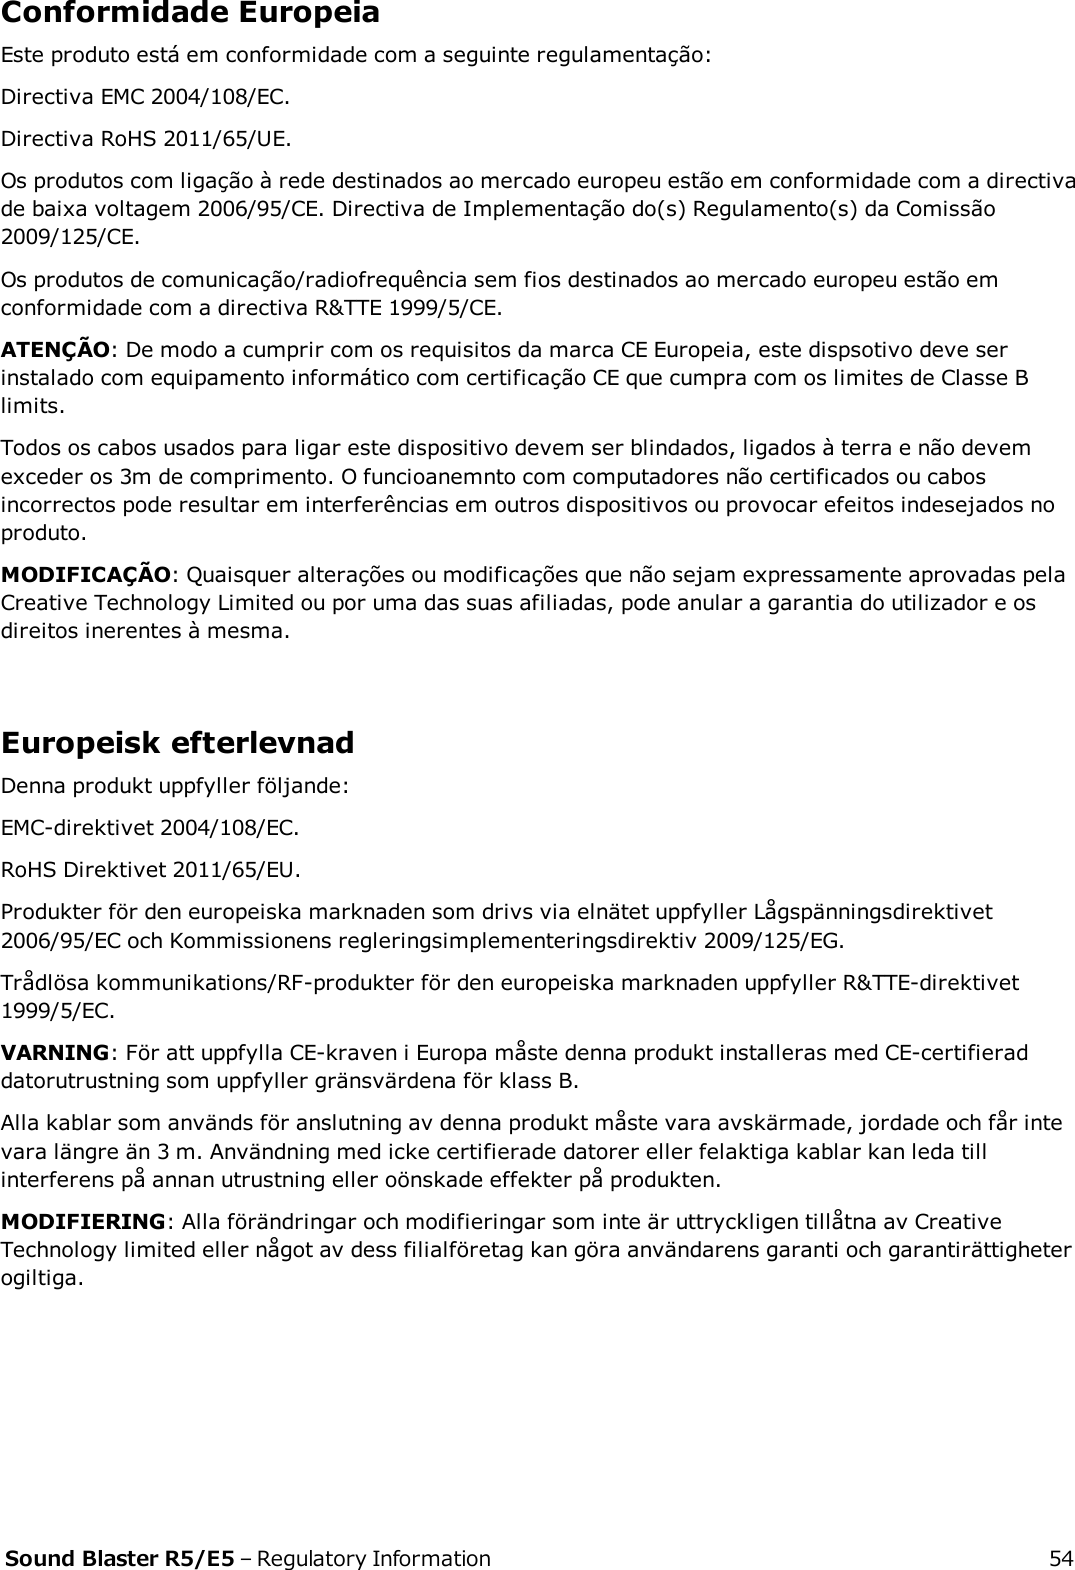 Conformidade EuropeiaEste produto está em conformidade com a seguinte regulamentação:Directiva EMC 2004/108/EC.Directiva RoHS 2011/65/UE.Os produtos com ligação à rede destinados ao mercado europeu estão em conformidade com a directivade baixa voltagem 2006/95/CE. Directiva de Implementação do(s) Regulamento(s) da Comissão2009/125/CE.Os produtos de comunicação/radiofrequência sem fios destinados ao mercado europeu estão emconformidade com a directiva R&amp;TTE 1999/5/CE.ATENÇÃO: De modo a cumprir com os requisitos da marca CE Europeia, este dispsotivo deve serinstalado com equipamento informático com certificação CE que cumpra com os limites de Classe Blimits.Todos os cabos usados para ligar este dispositivo devem ser blindados, ligados à terra e não devemexceder os 3m de comprimento. O funcioanemnto com computadores não certificados ou cabosincorrectos pode resultar em interferências em outros dispositivos ou provocar efeitos indesejados noproduto.MODIFICAÇÃO: Quaisquer alterações ou modificações que não sejam expressamente aprovadas pelaCreative Technology Limited ou por uma das suas afiliadas, pode anular a garantia do utilizador e osdireitos inerentes à mesma.Europeisk efterlevnadDenna produkt uppfyller följande:EMC-direktivet 2004/108/EC.RoHS Direktivet 2011/65/EU.Produkter för den europeiska marknaden som drivs via elnätet uppfyller Lågspänningsdirektivet2006/95/EC och Kommissionens regleringsimplementeringsdirektiv 2009/125/EG.Trådlösa kommunikations/RF-produkter för den europeiska marknaden uppfyller R&amp;TTE-direktivet1999/5/EC.VARNING: För att uppfylla CE-kraven i Europa måste denna produkt installeras med CE-certifieraddatorutrustning som uppfyller gränsvärdena för klass B.Alla kablar som används för anslutning av denna produkt måste vara avskärmade, jordade och får intevara längre än 3 m. Användning med icke certifierade datorer eller felaktiga kablar kan leda tillinterferens på annan utrustning eller oönskade effekter på produkten.MODIFIERING: Alla förändringar och modifieringar som inte är uttryckligen tillåtna av CreativeTechnology limited eller något av dess filialföretag kan göra användarens garanti och garantirättigheterogiltiga.Sound Blaster R5/E5 – Regulatory Information 54